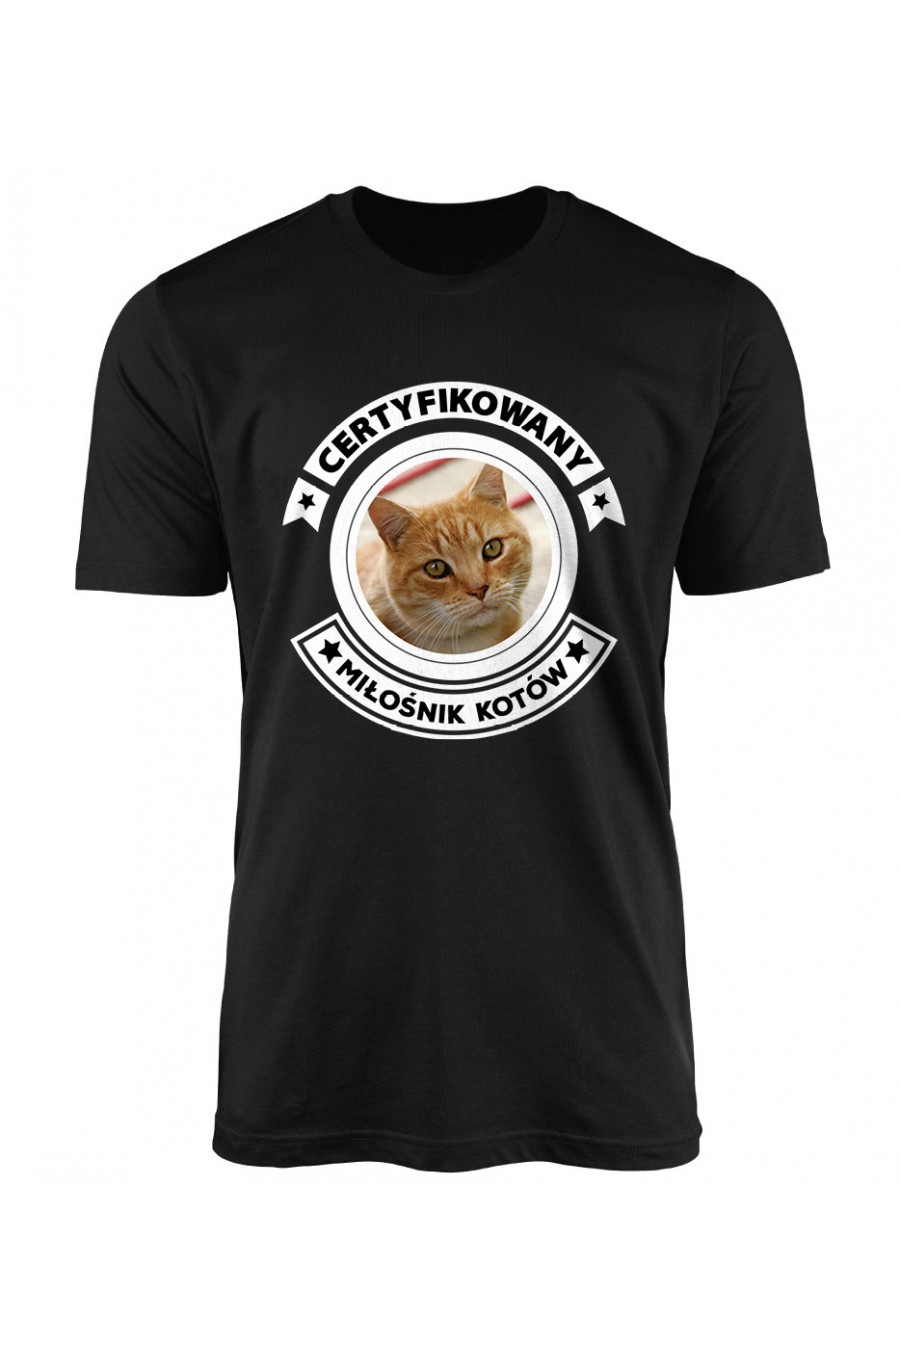 Koszulka Męska Certyfikowany Miłośnik Kotów